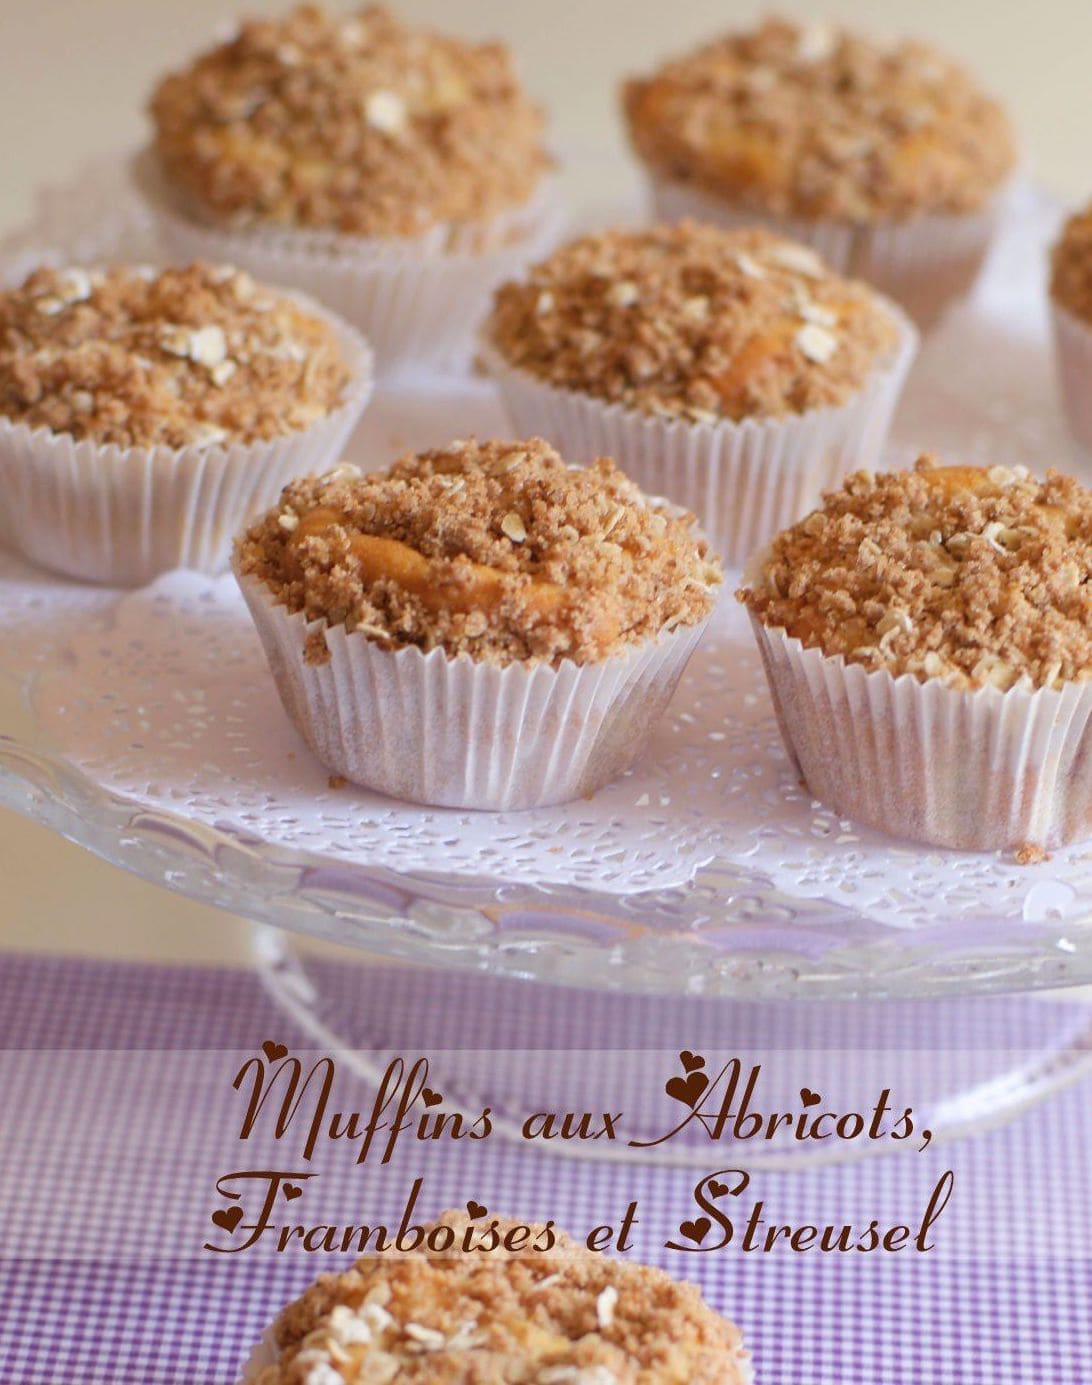 muffins aux framboises, abricots et streusel.